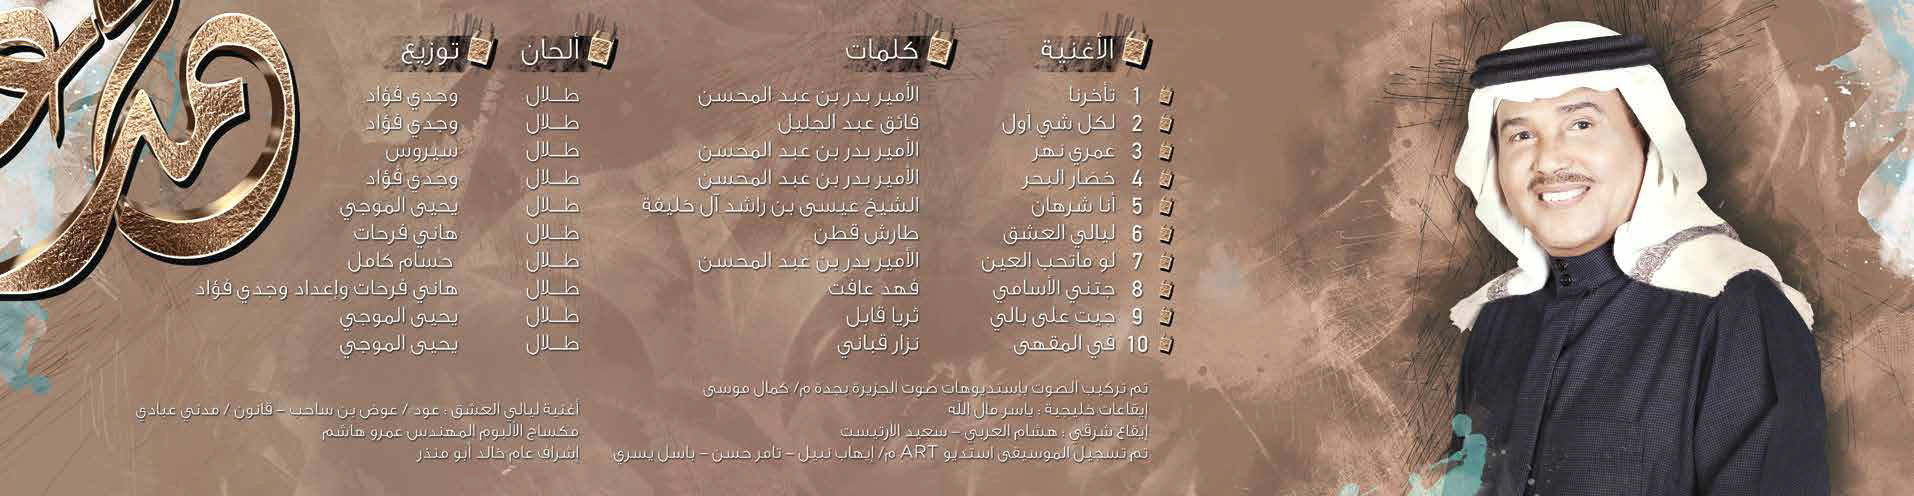 غلاف ألبوم محمد عبده "عمري نهر"